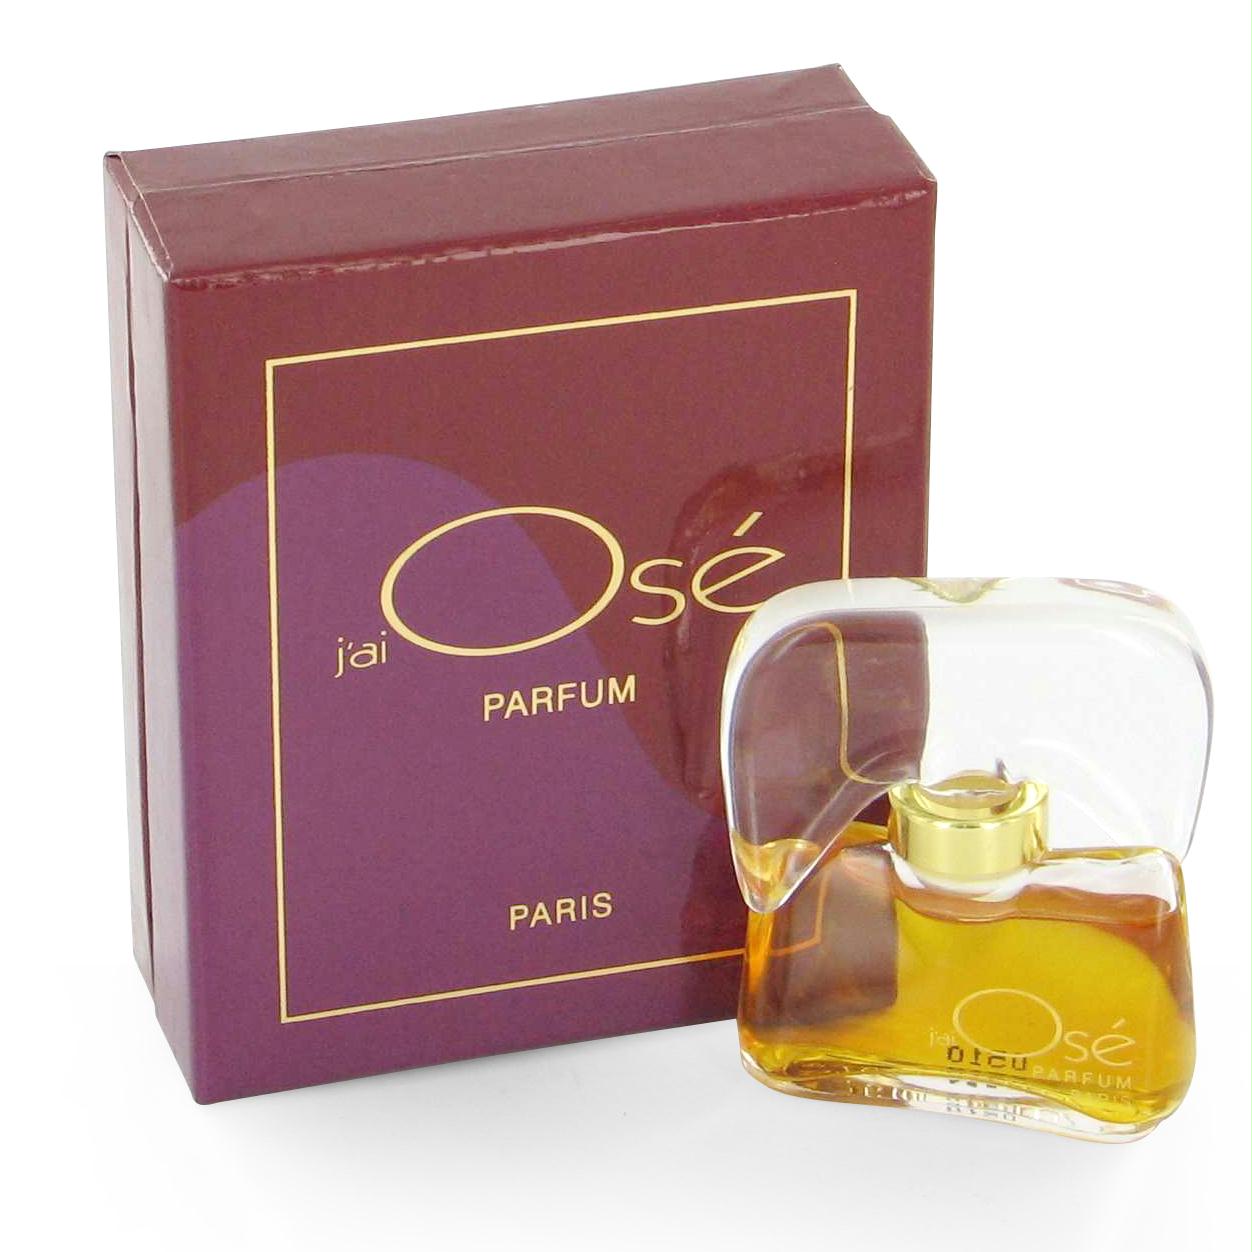 Jai Ose By Pure Perfume 1/4 Oz